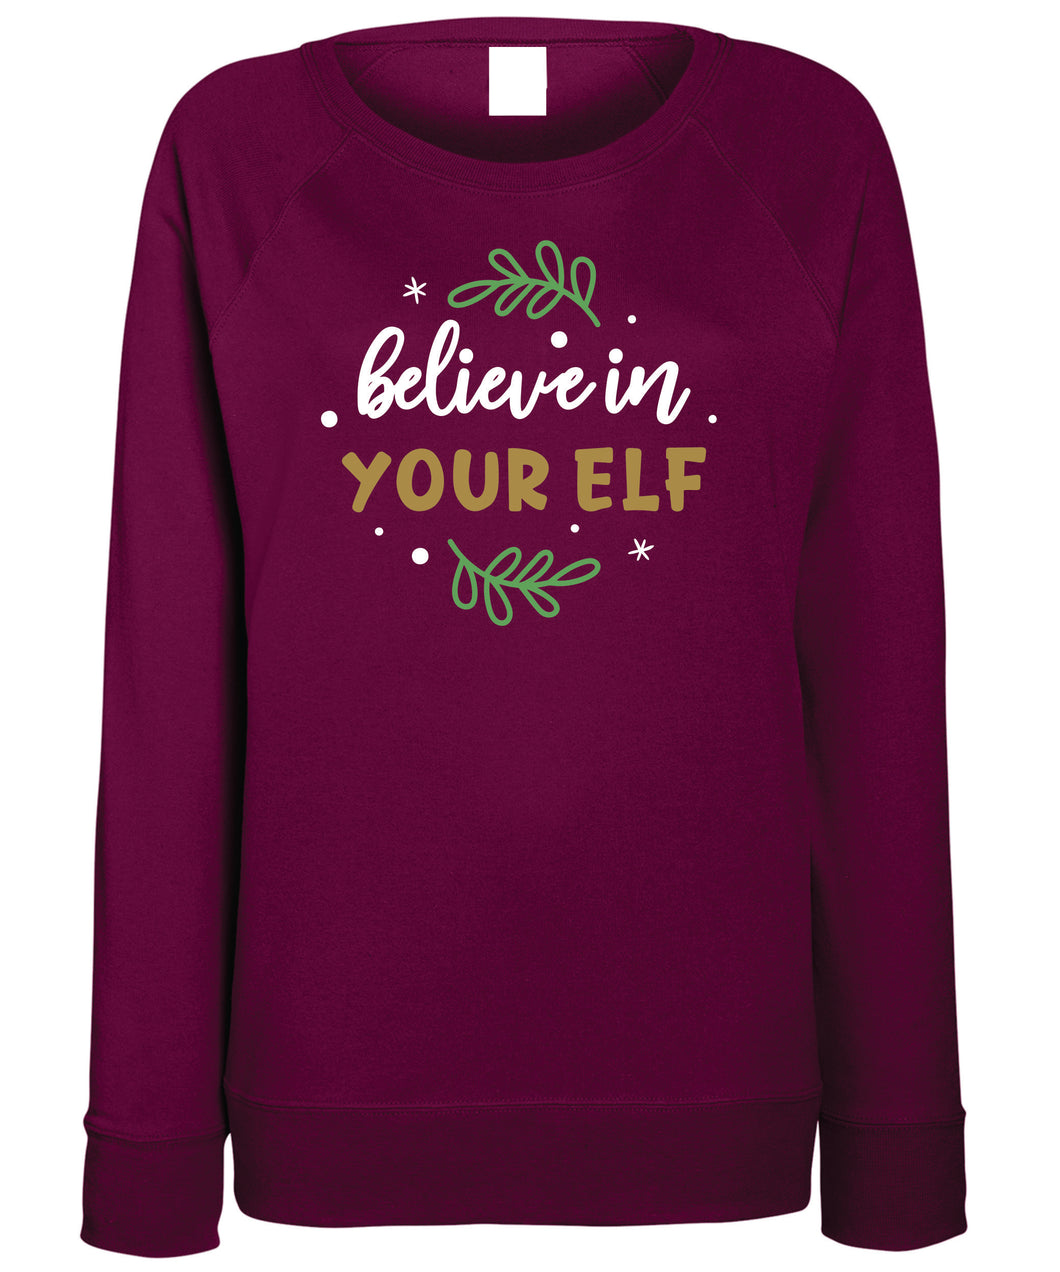 Women's Christmas Sweatshirt (Believe in Your Elf)